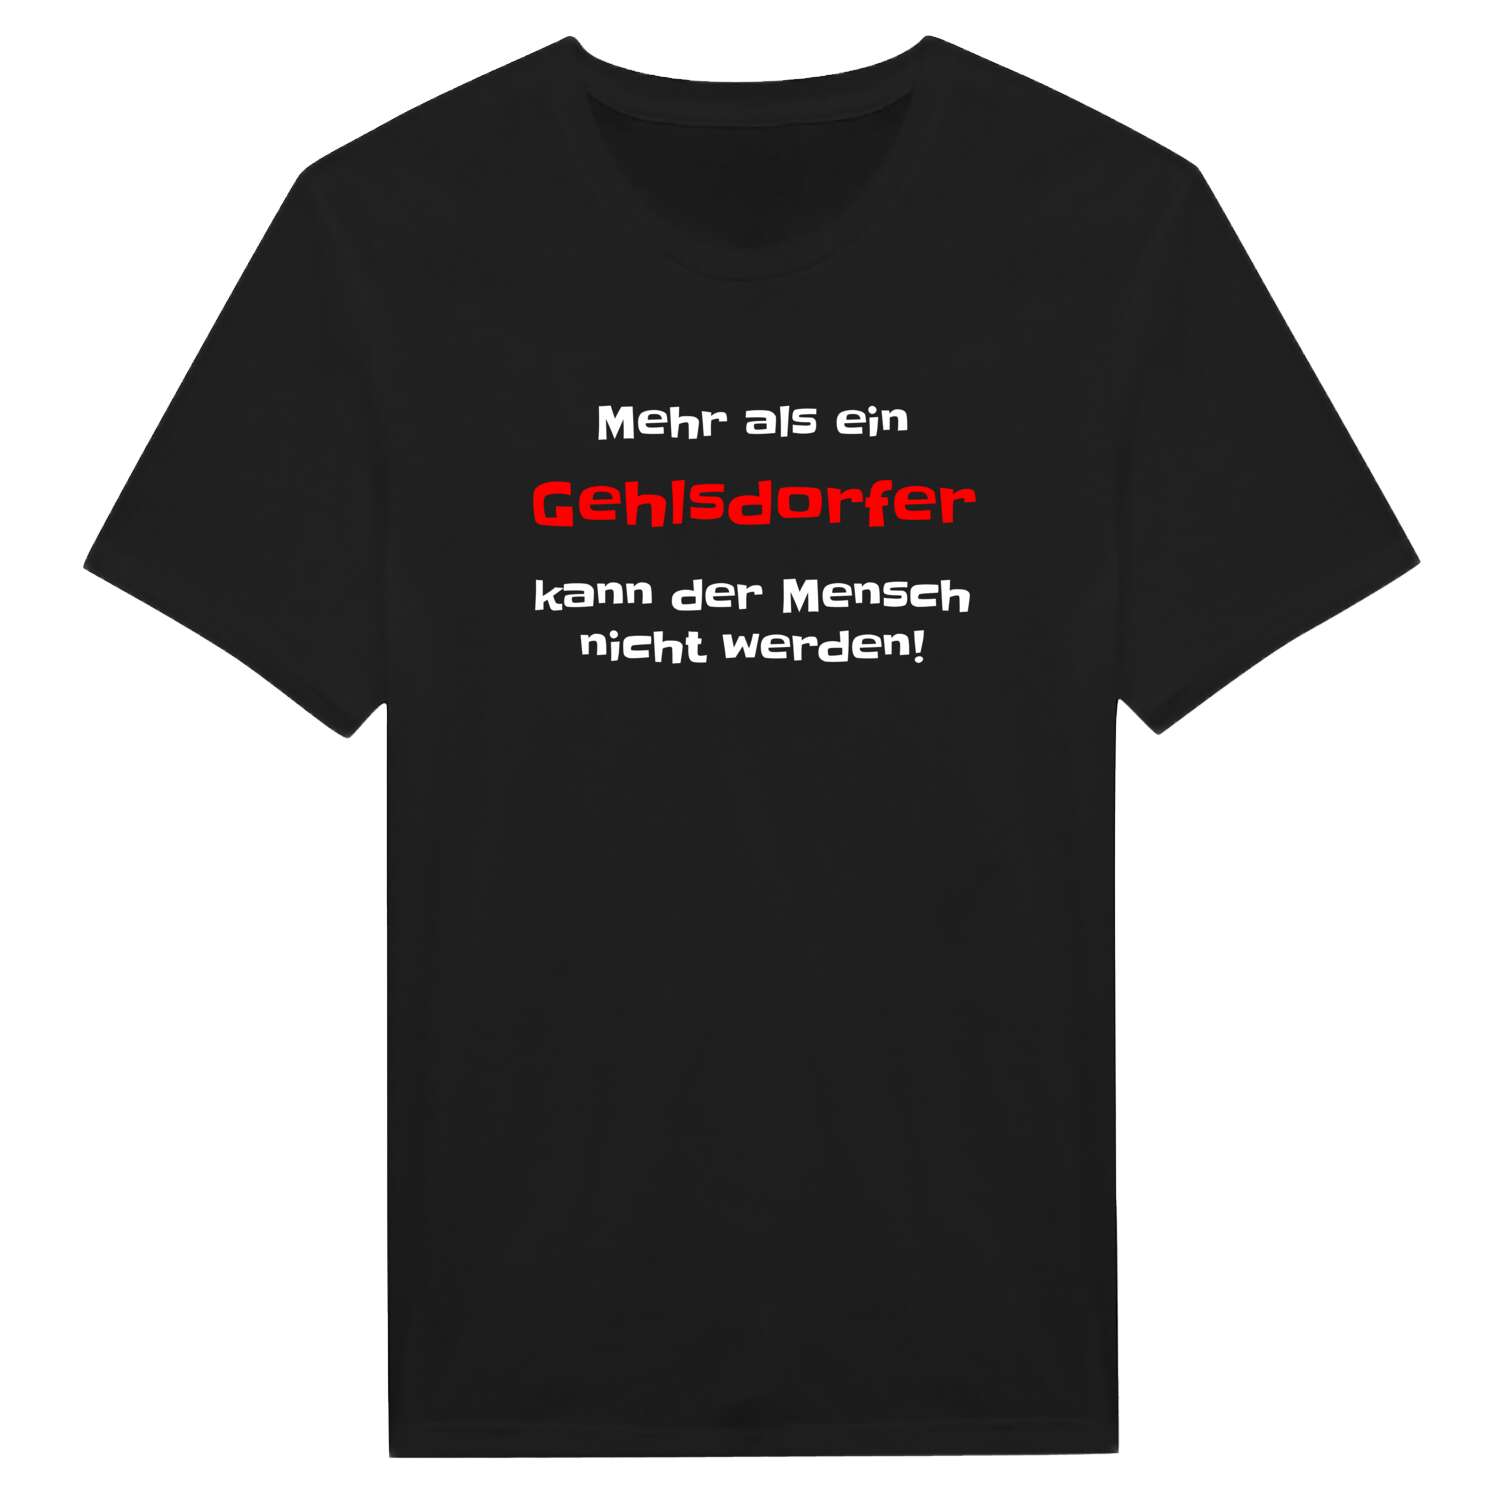 Gehlsdorf T-Shirt »Mehr als ein«